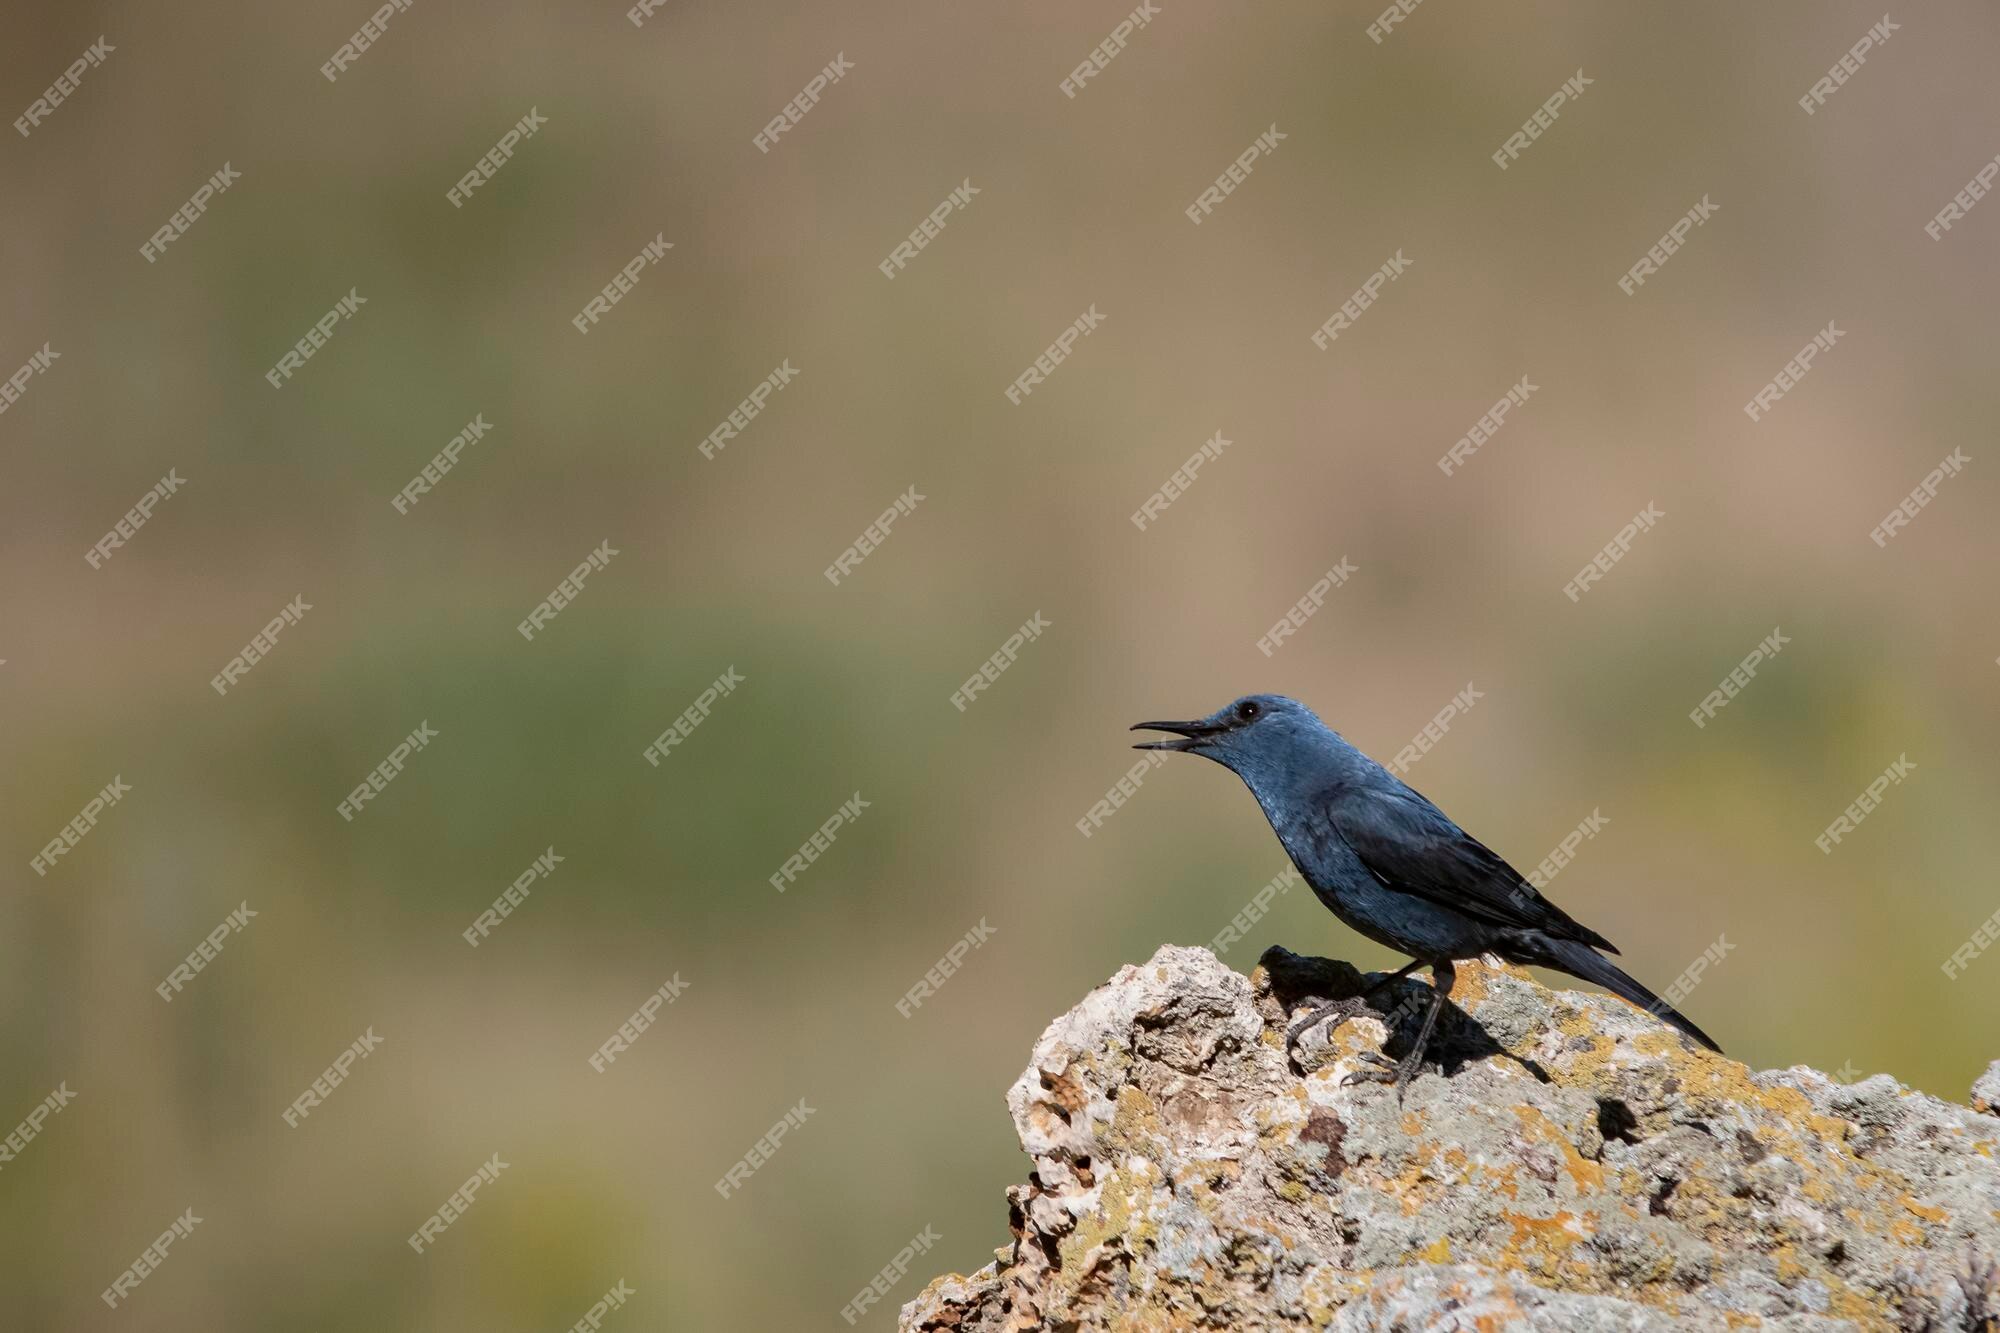 El rockero solitario es una especie de ave paseriforme de la muscicapidae. | Foto Premium